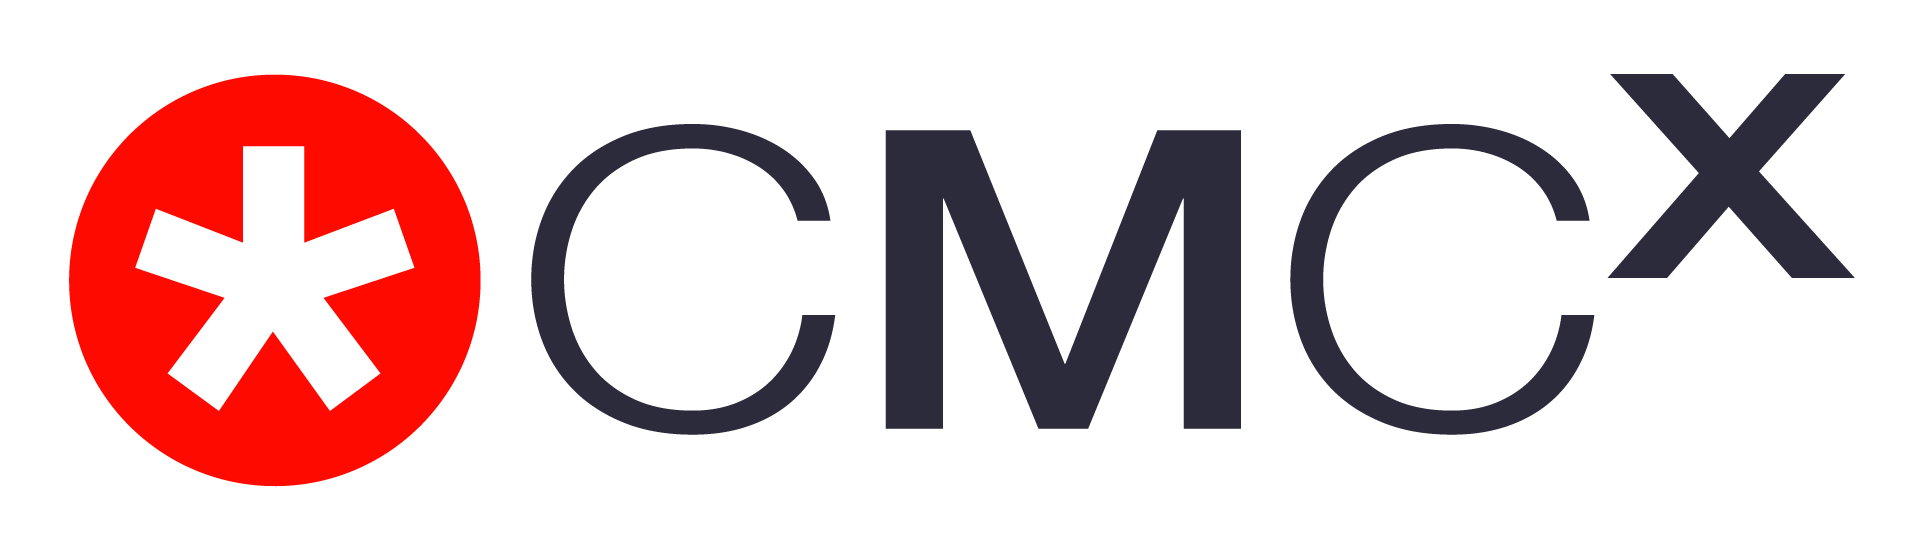 CMCX_Logo_RGB_1920x1080